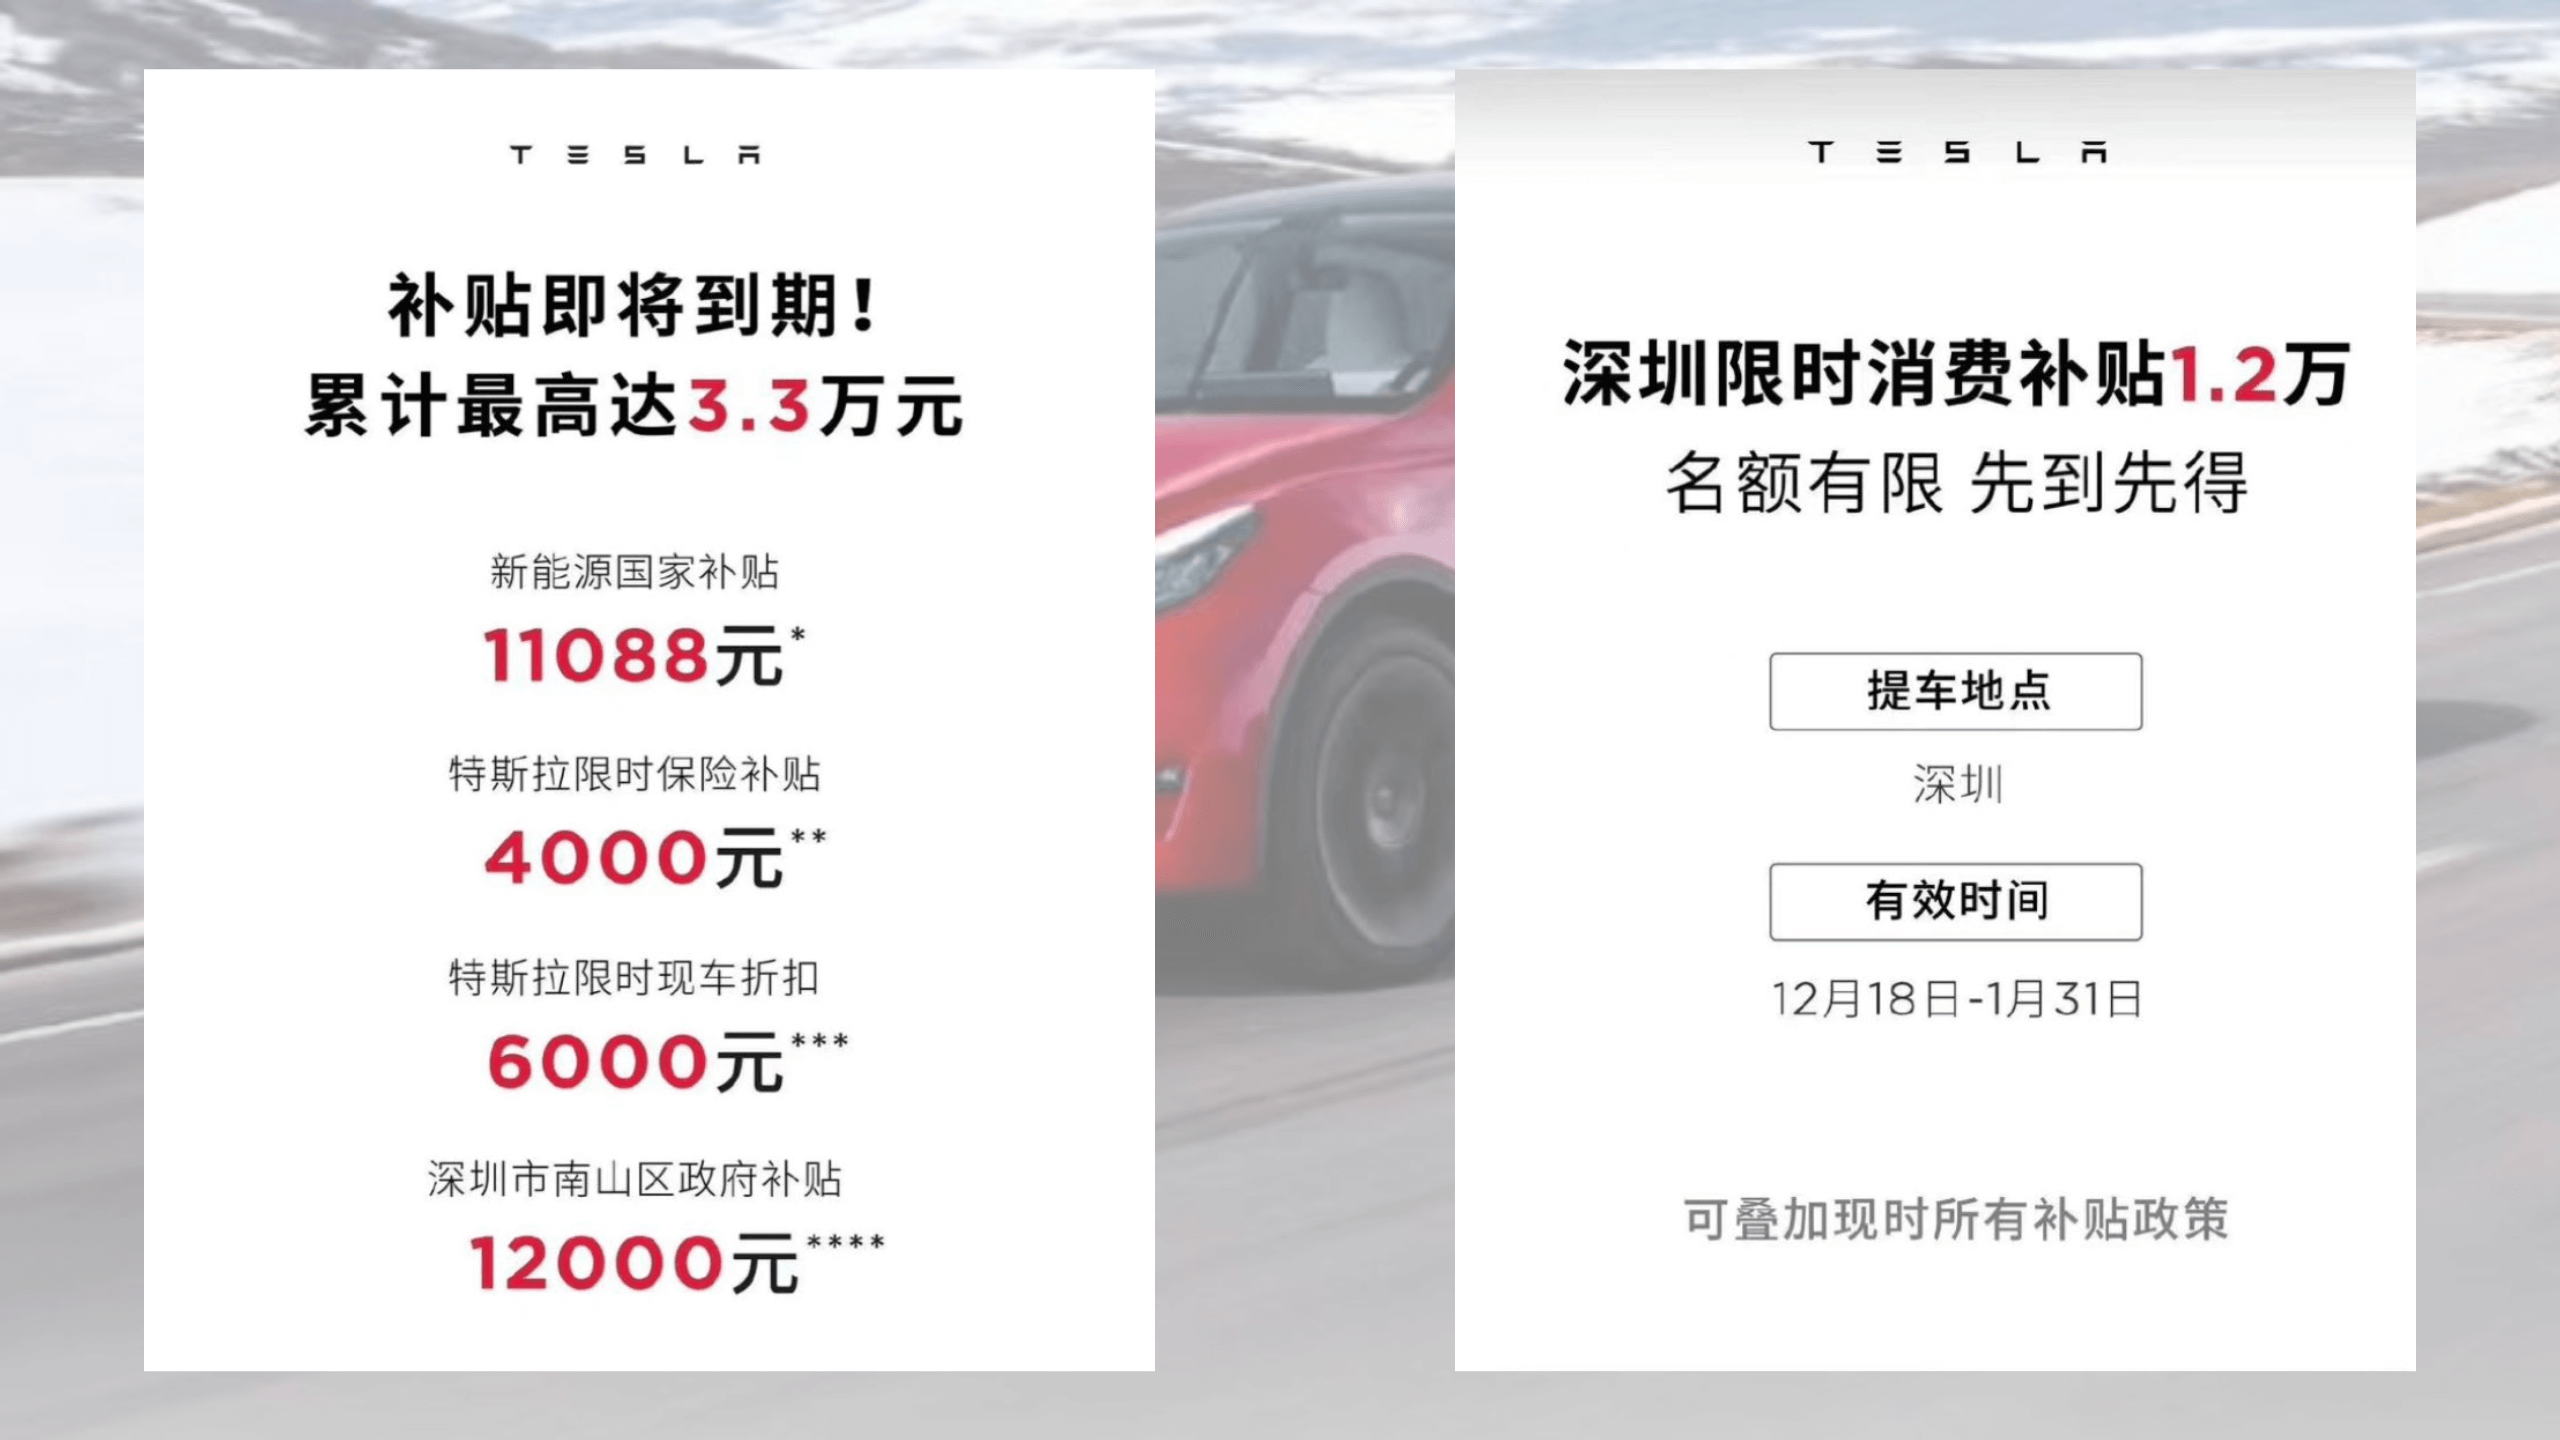 Tesla Model 3 & Y RWD qualifizieren sich für die neue Shenzhen-Subvention